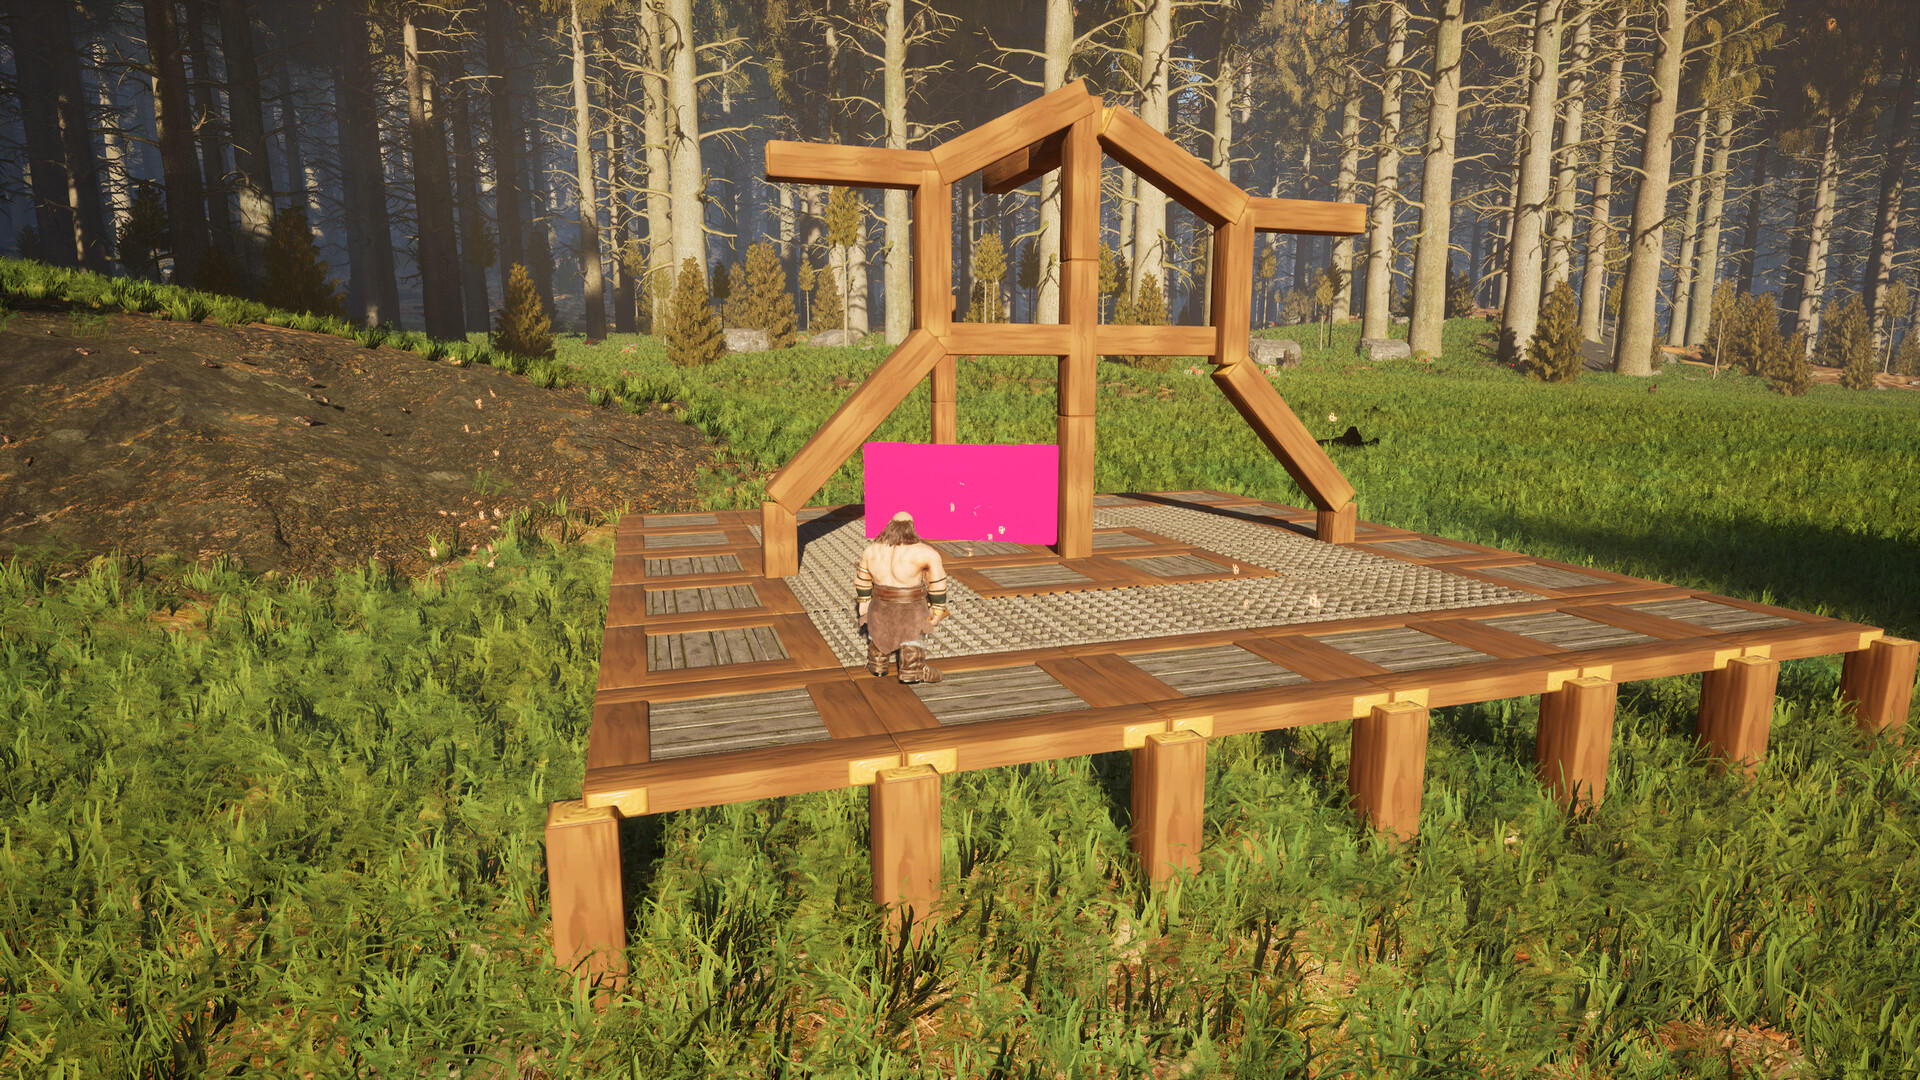 Dwarf Land screenshot game